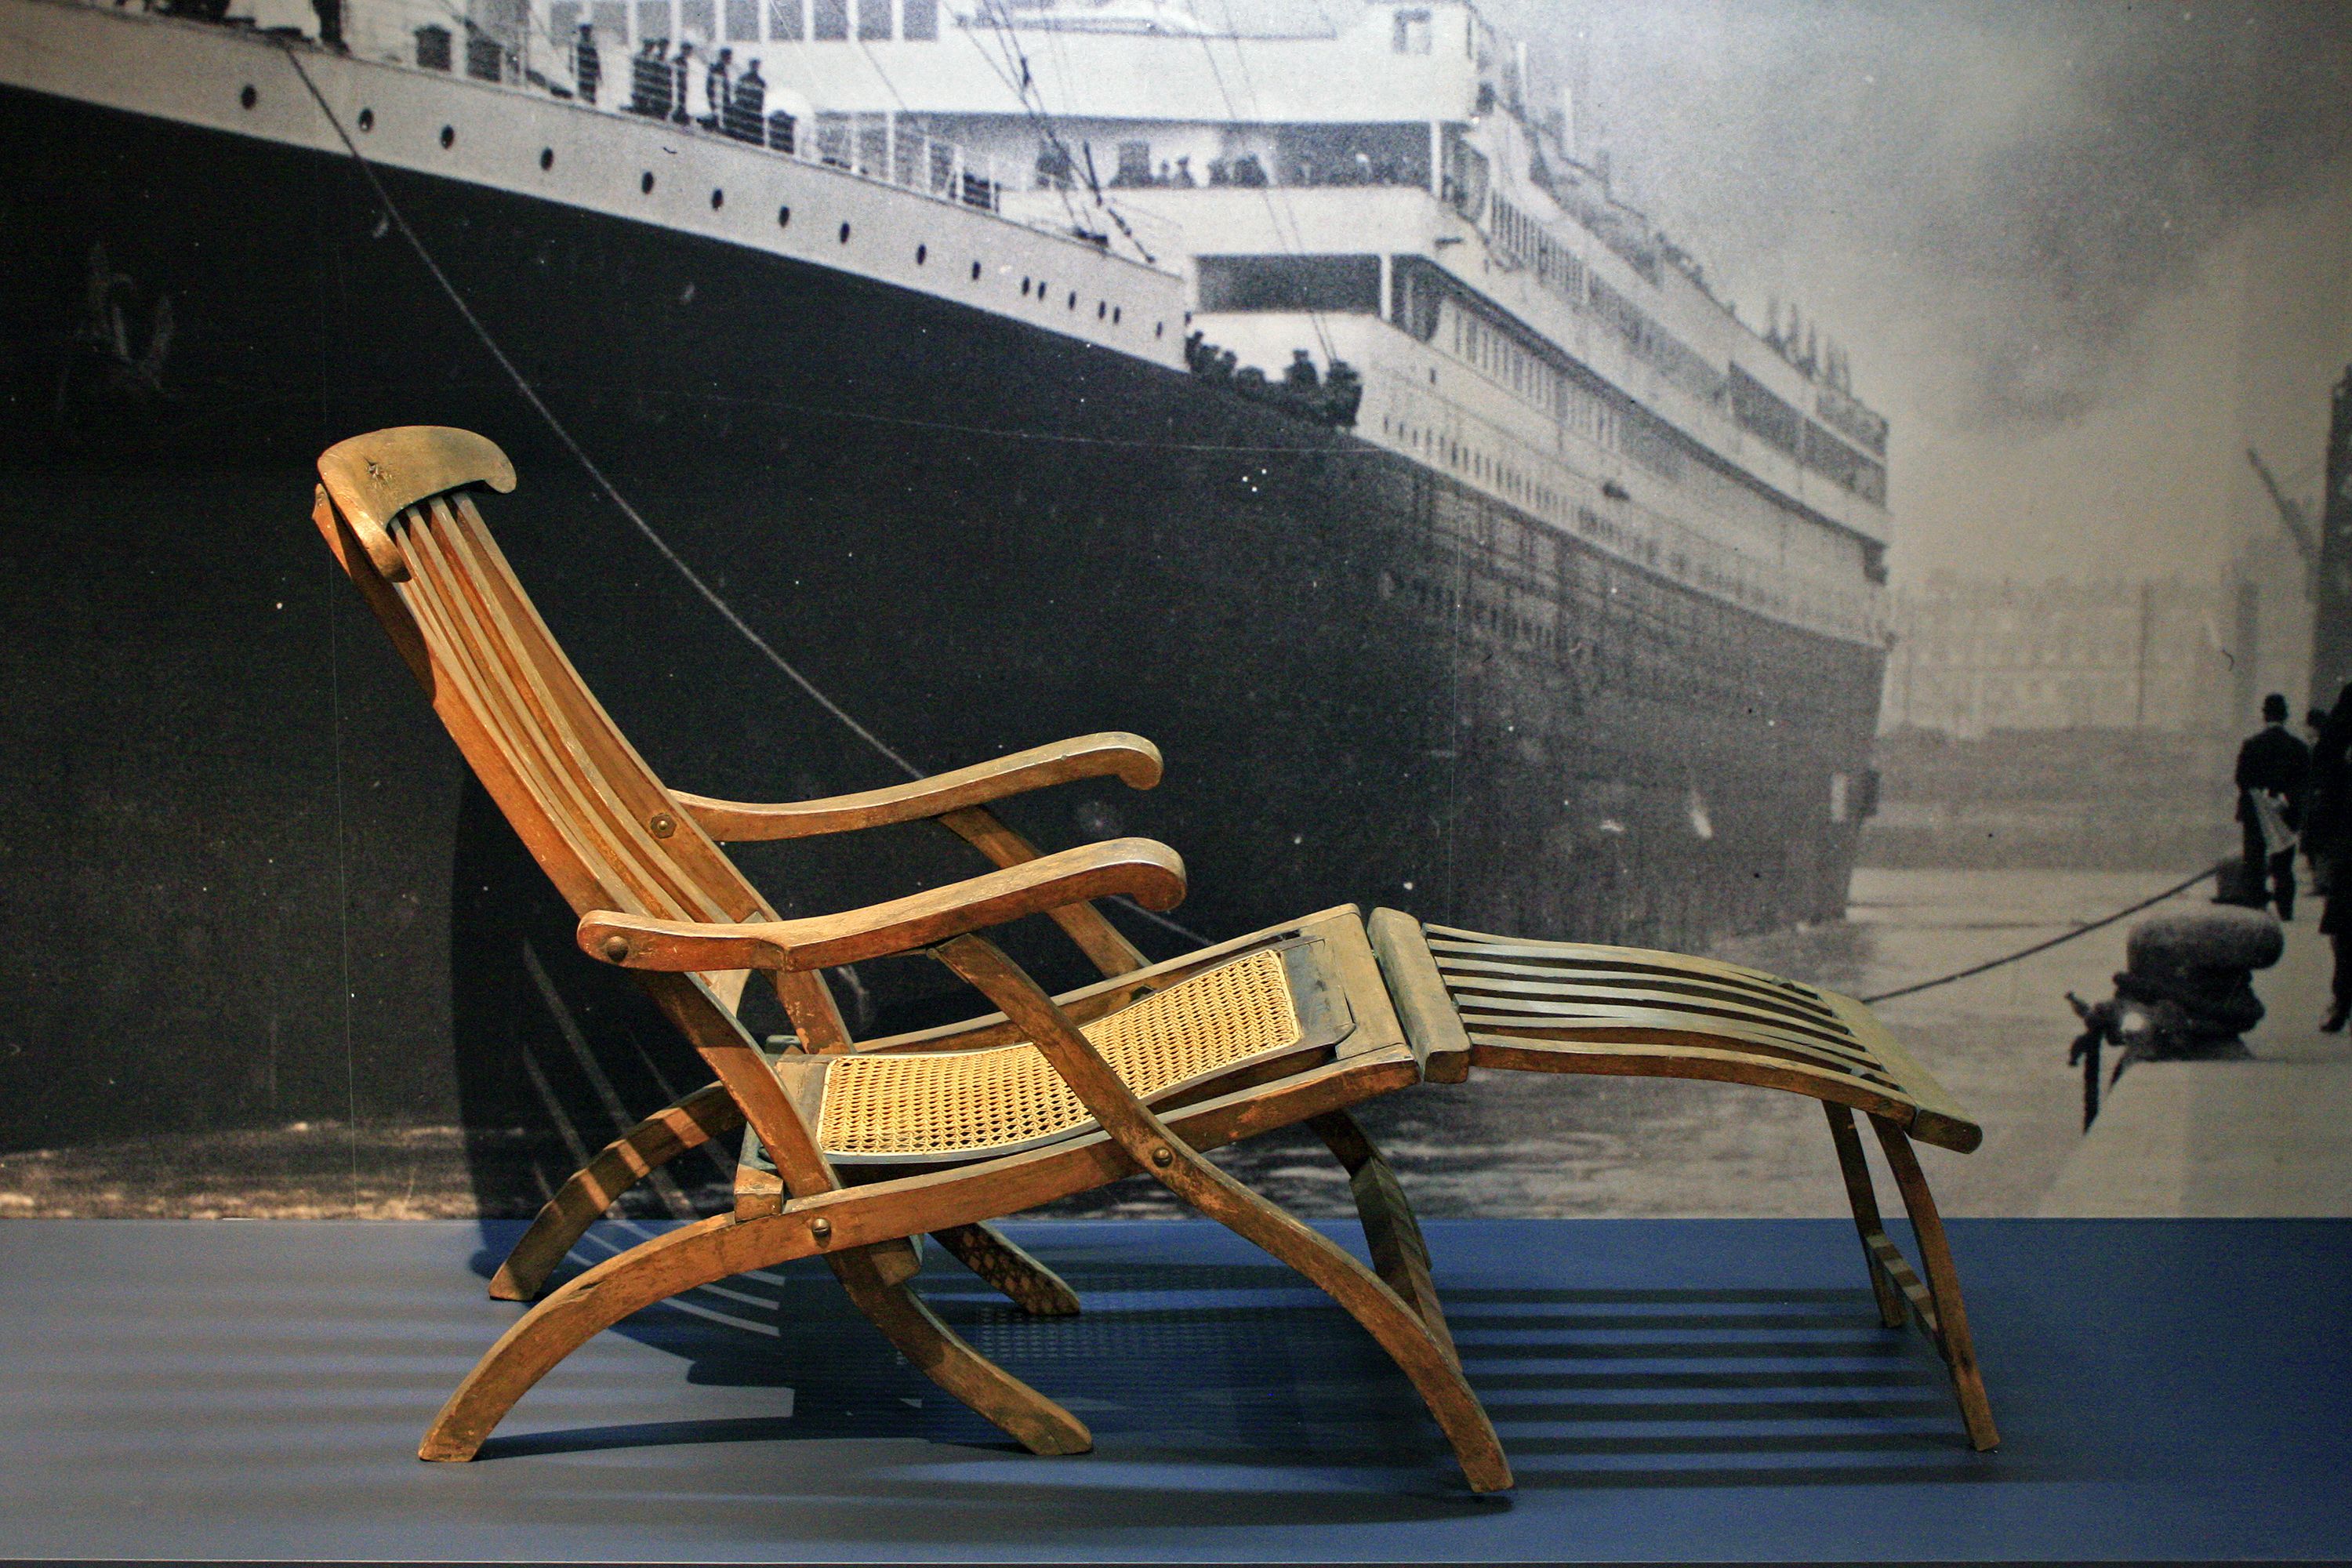 Australian billionaire to build Titanic replica | CNN